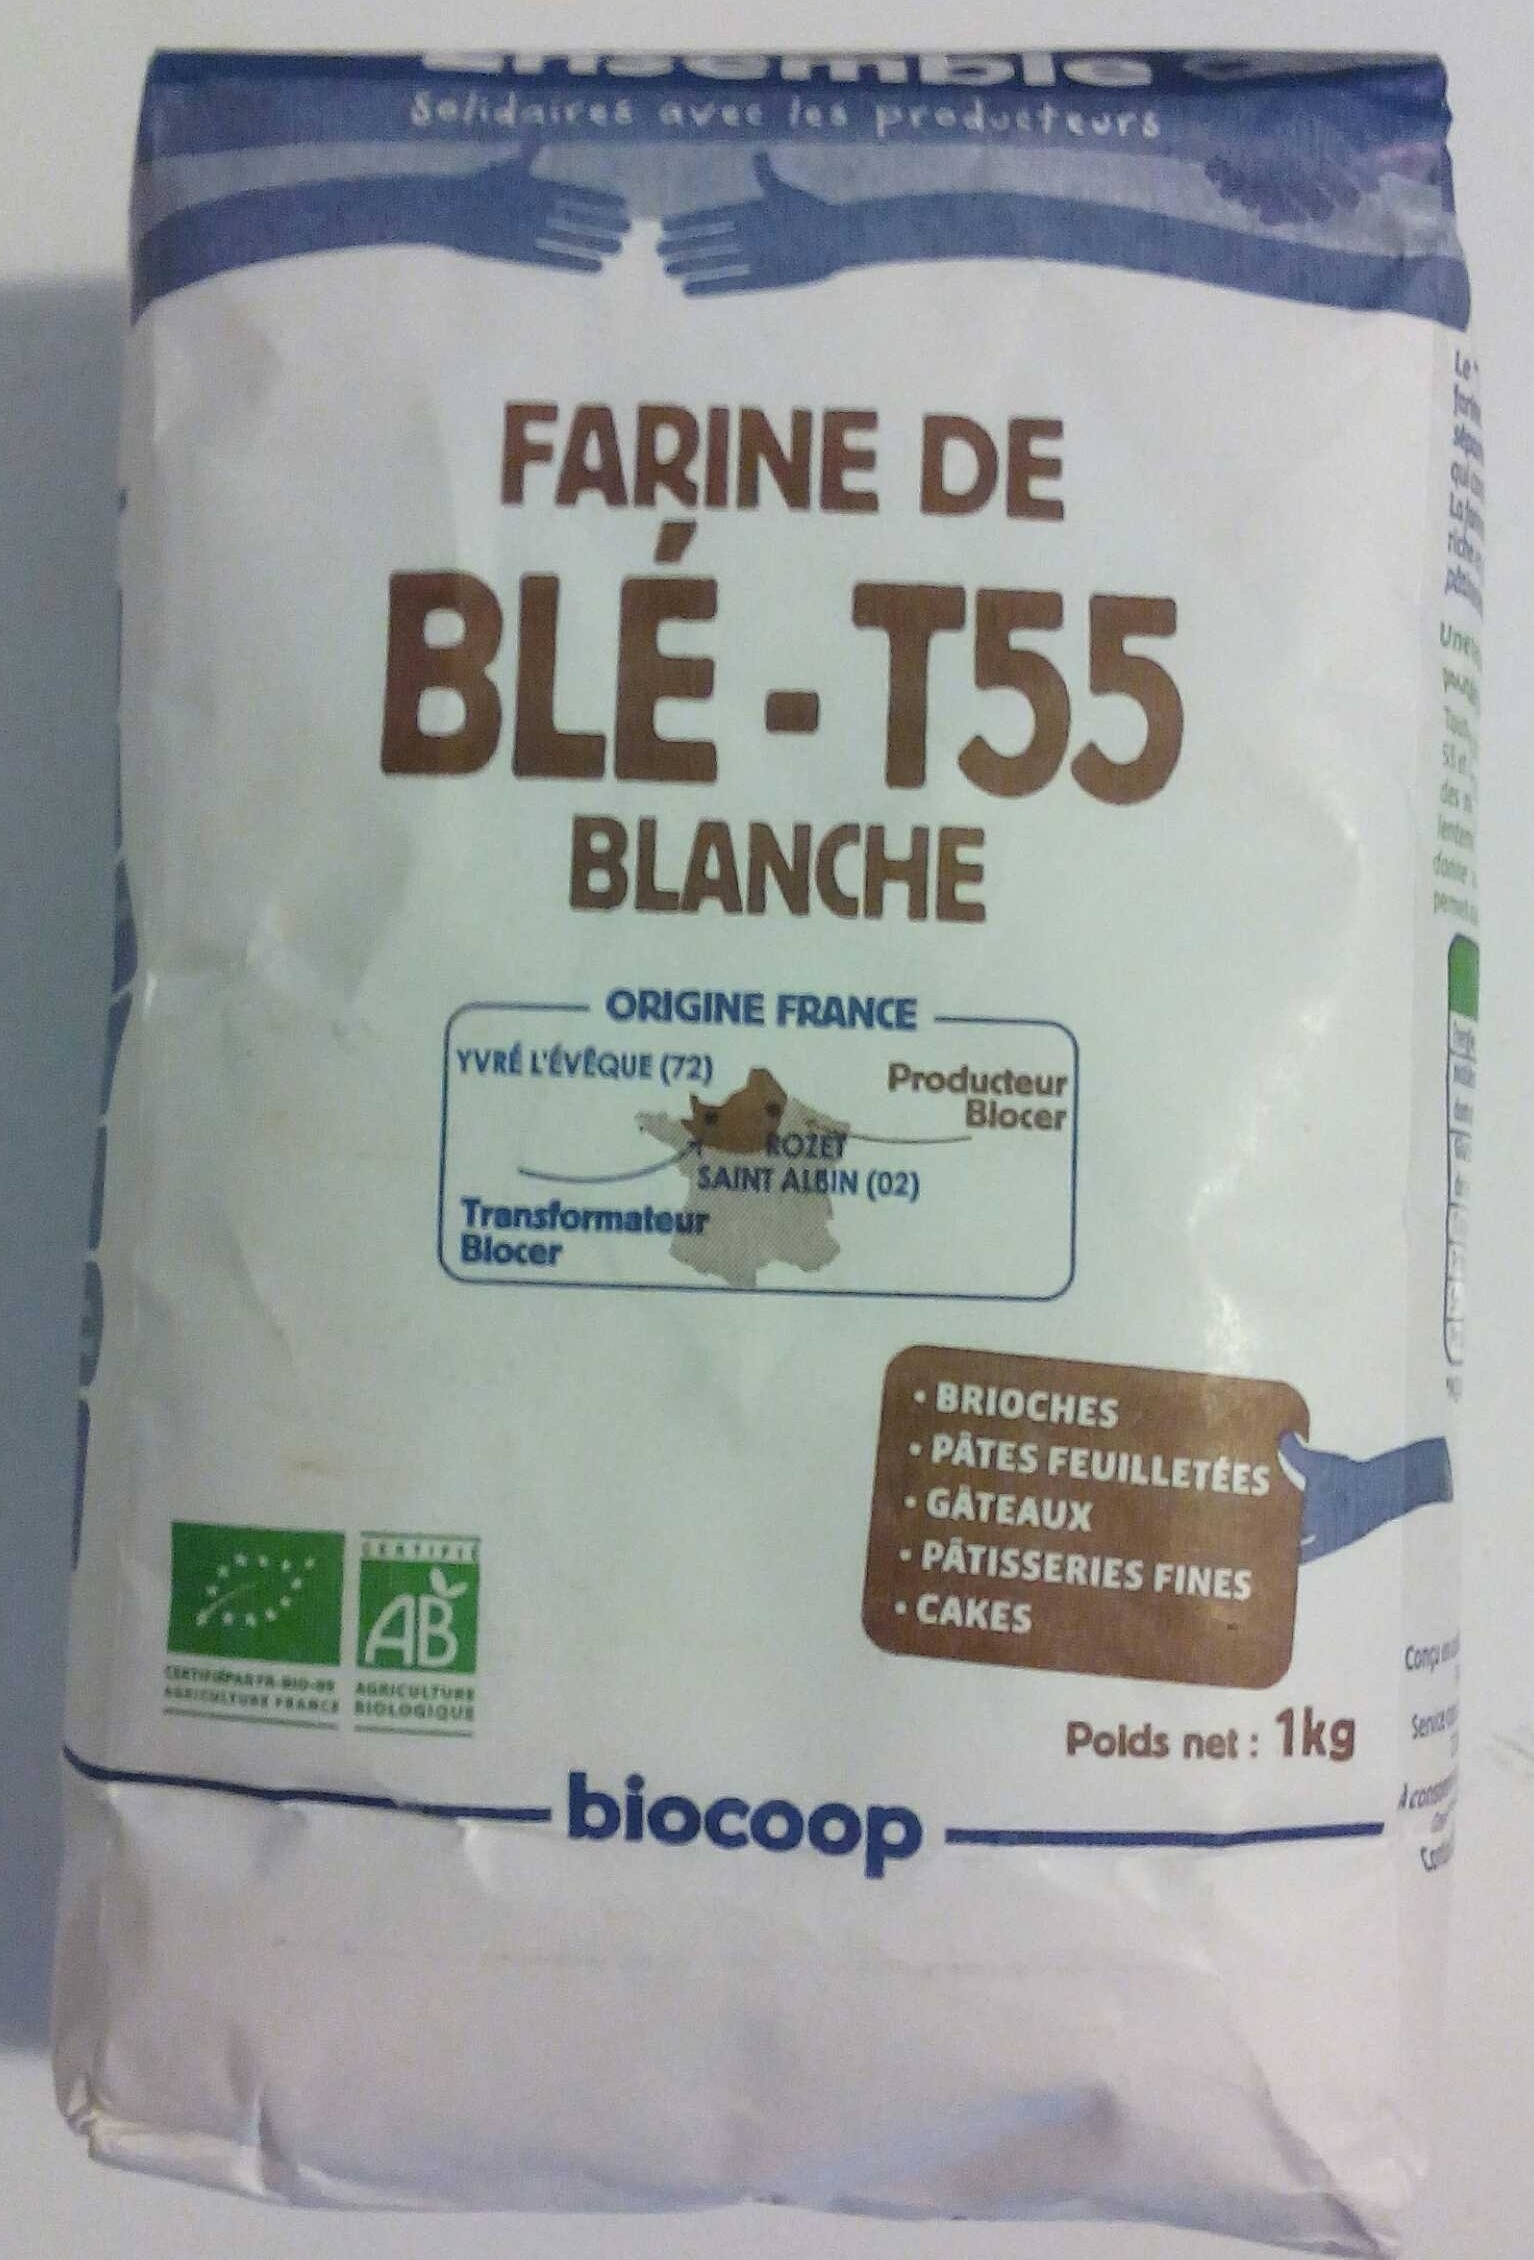 Farine de blé - T55 blanche - Produit